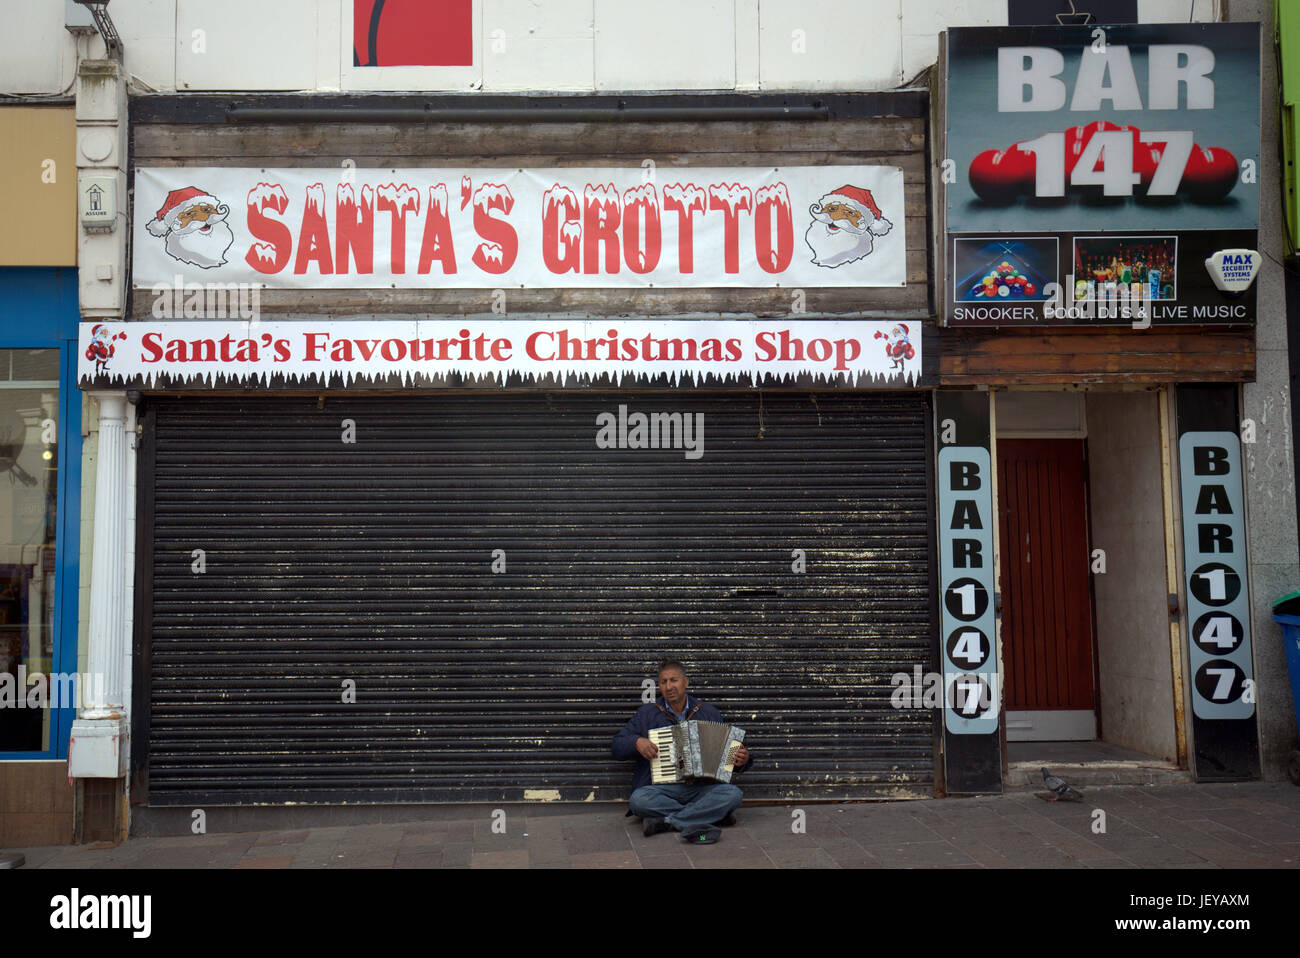 Chômeurs sans domicile mendicité homme jouant de l'accordéon fond de Noël santas grotto shop macrocosme de la Grande-Bretagne moderne Banque D'Images